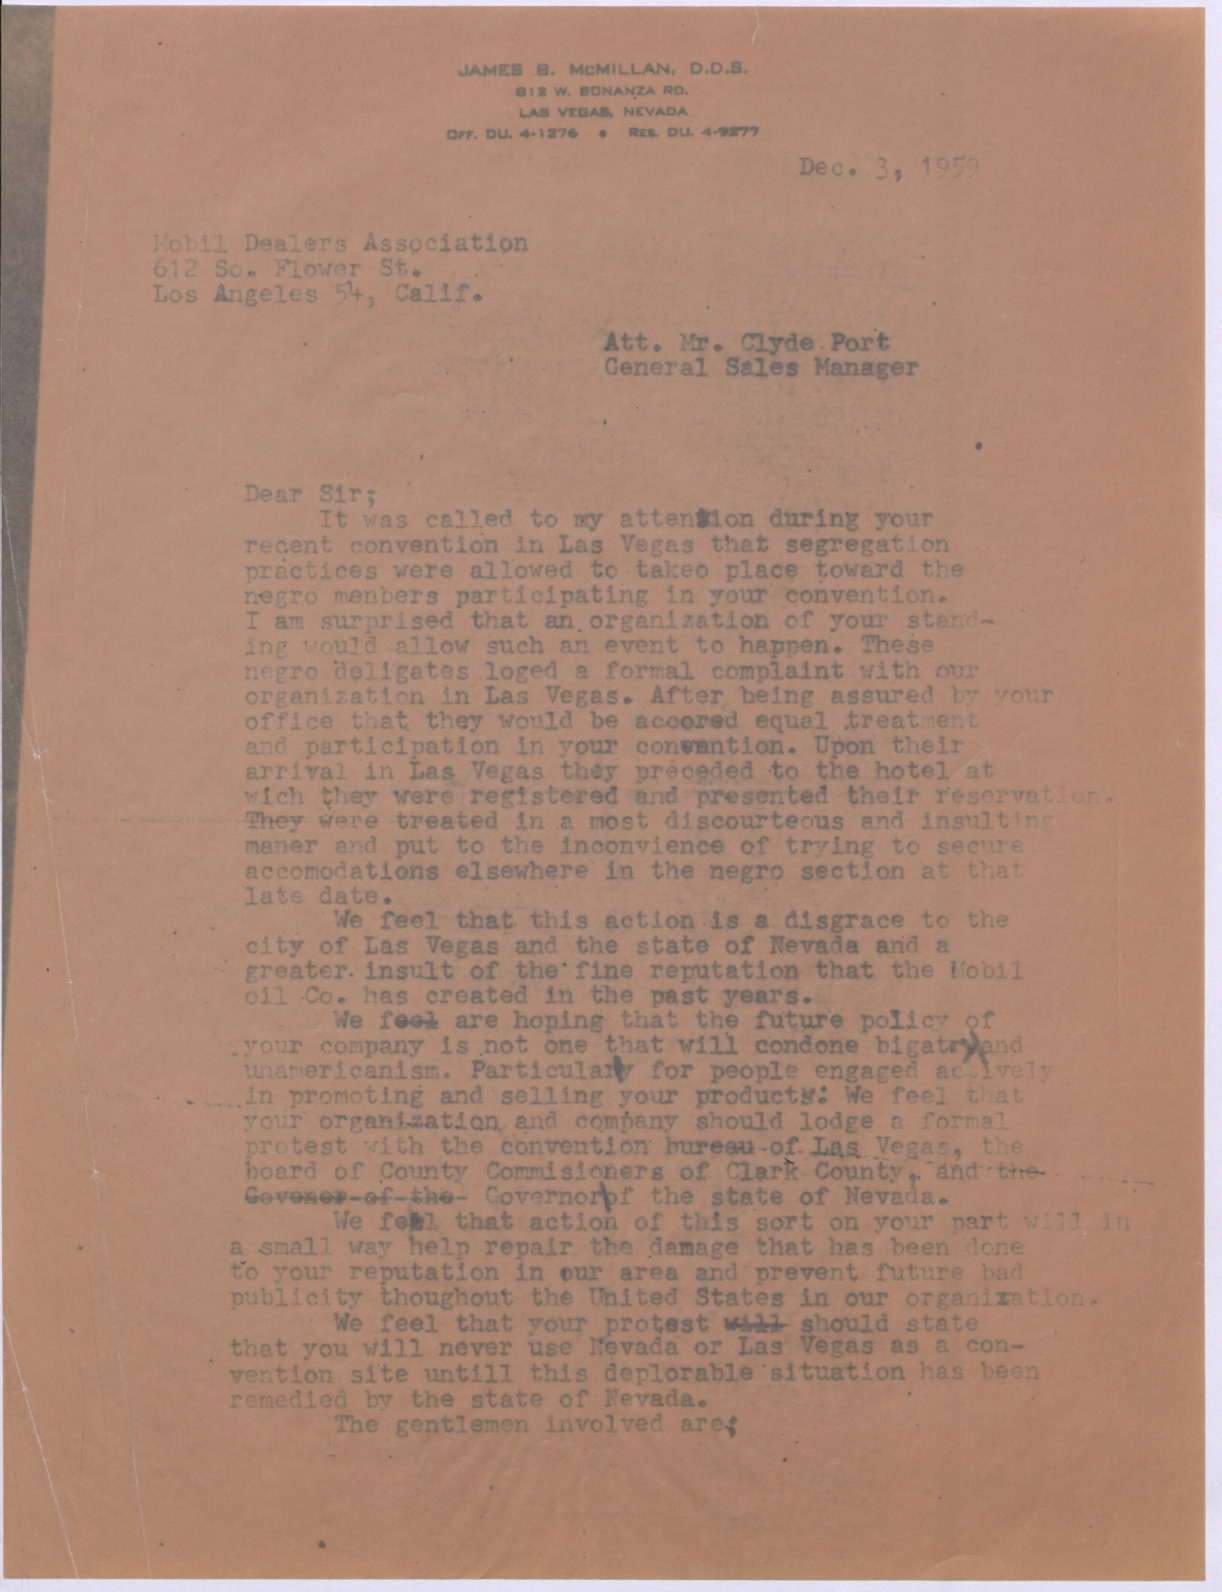 Letter to Clyde Port, December 3, 1959